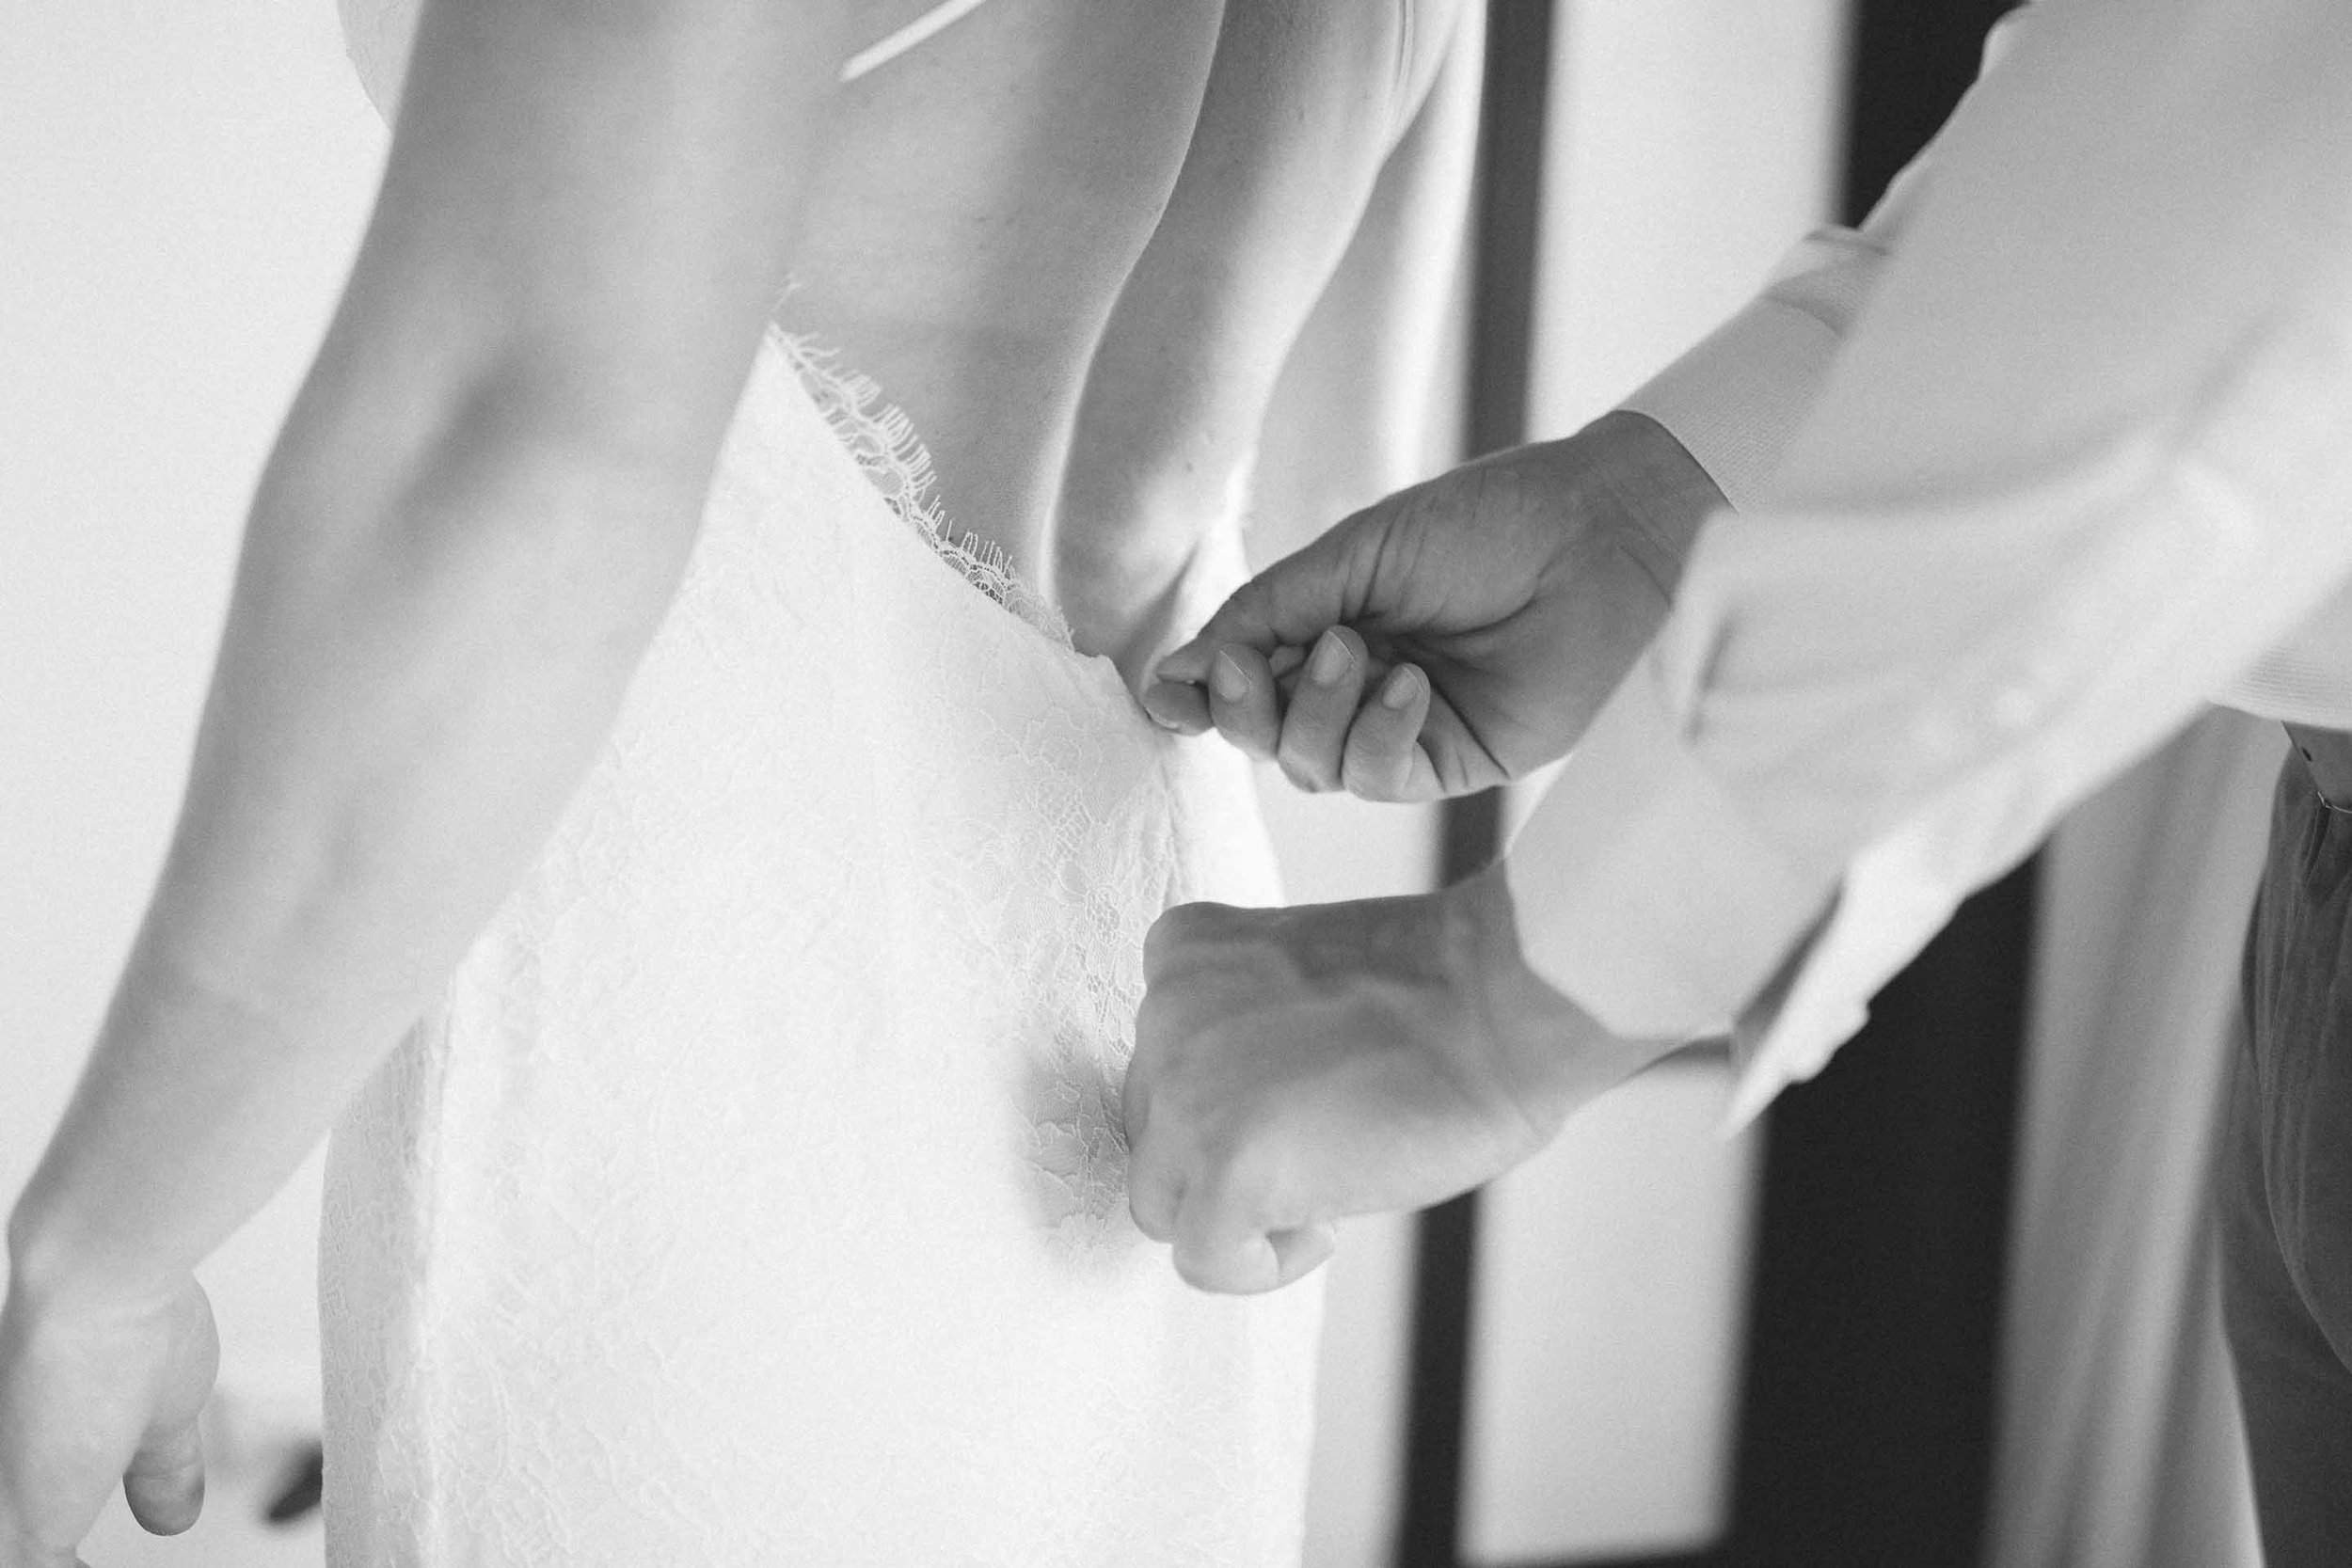 Groom helps the Bride zip up her wedding dress